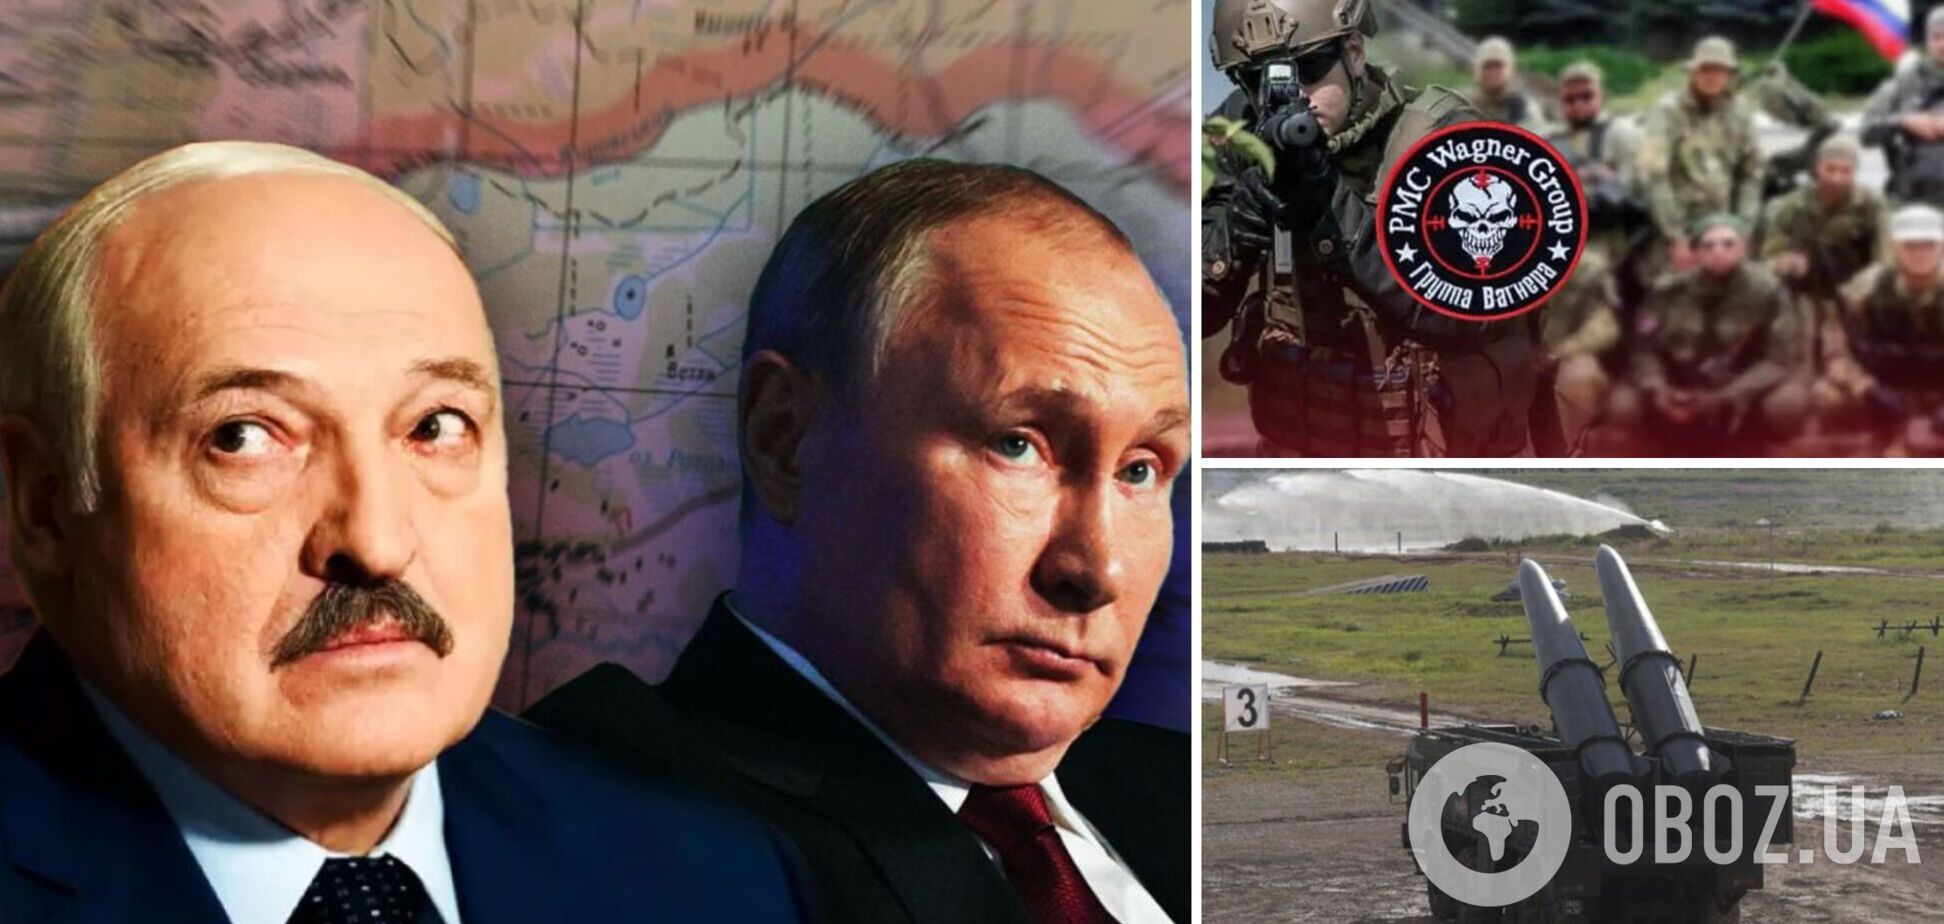 Ядерное оружие и ЧВК 'Вагнер' в Беларуси: очередной блеф Кремля для давления на Европу